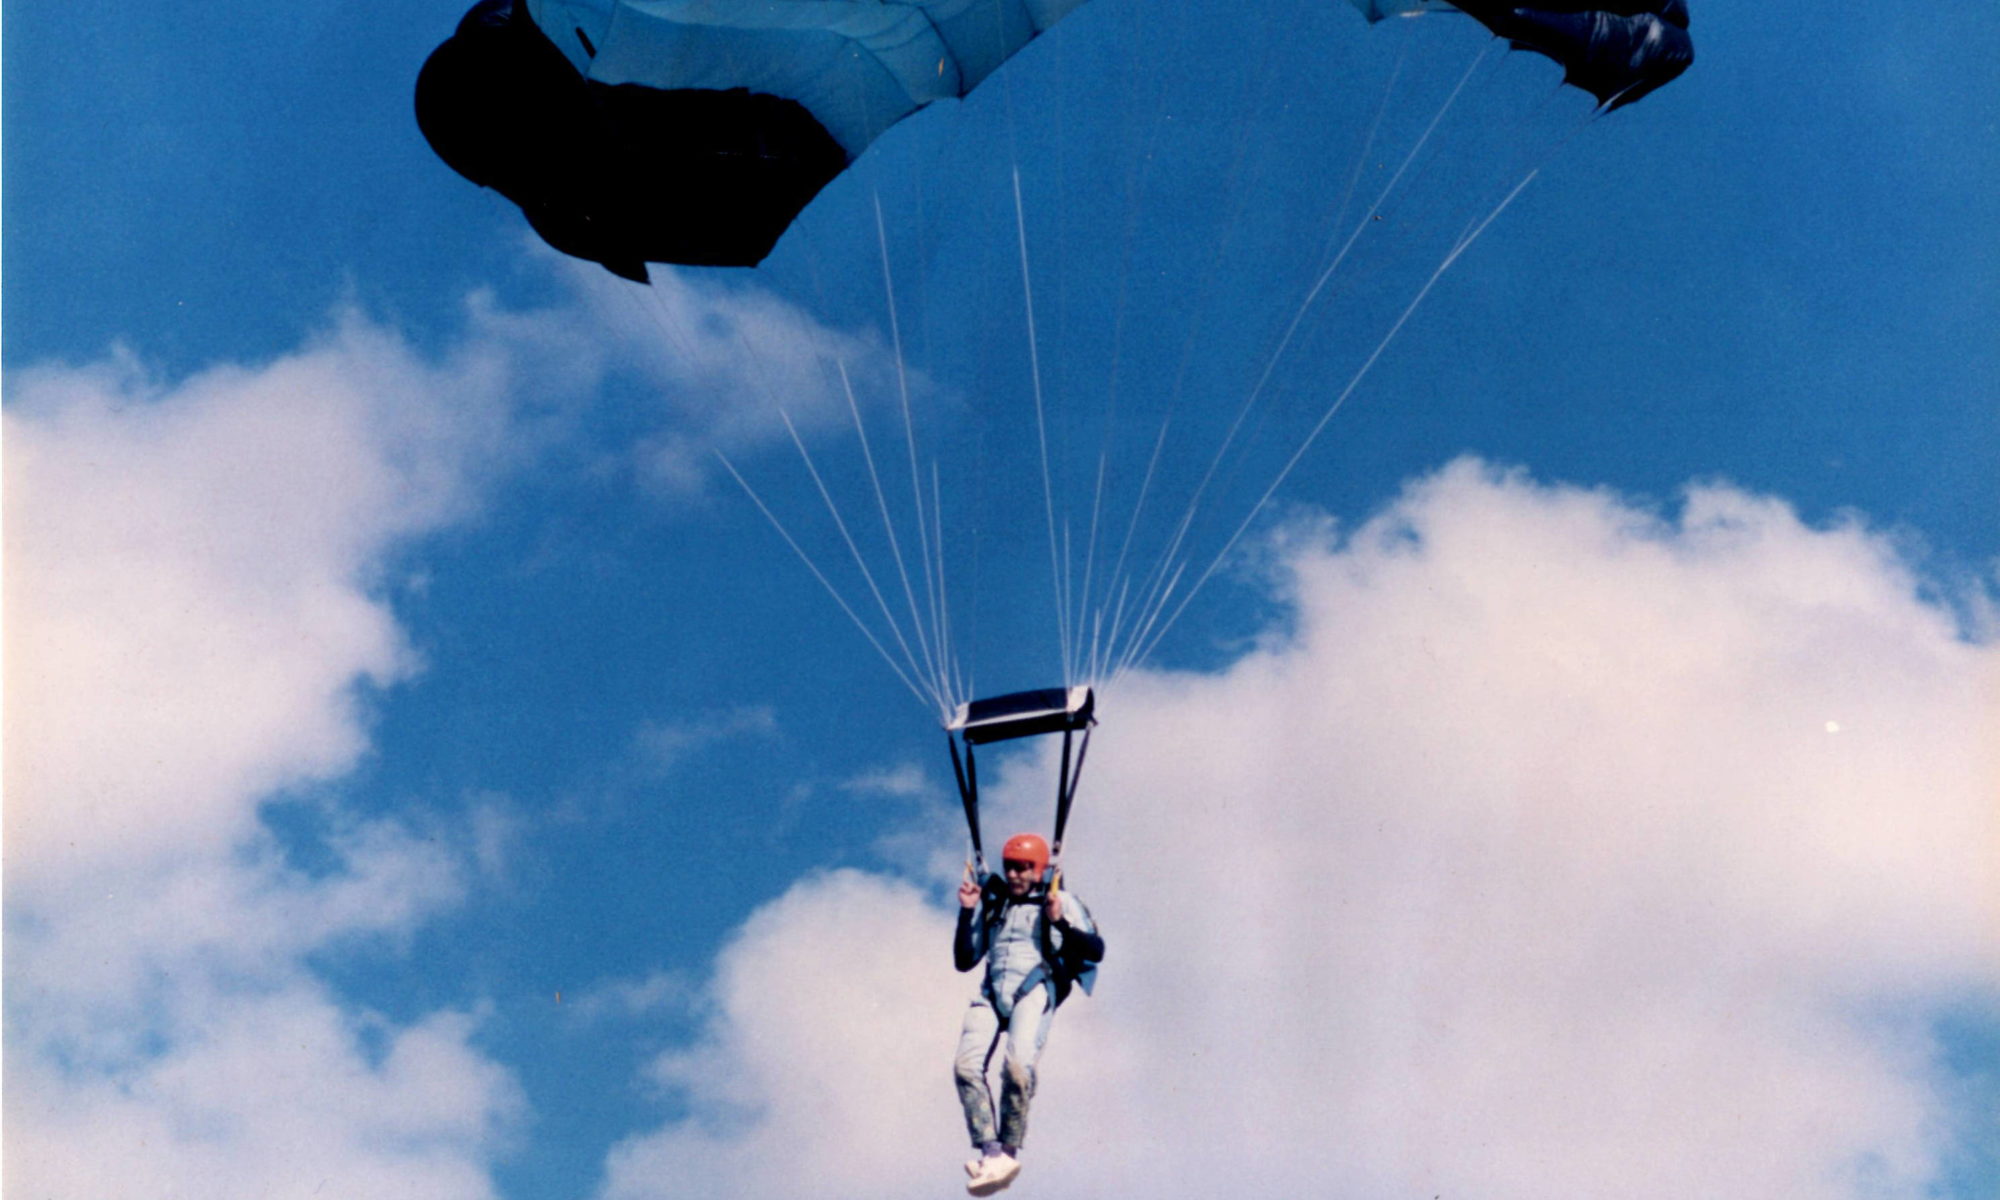 John skydiving